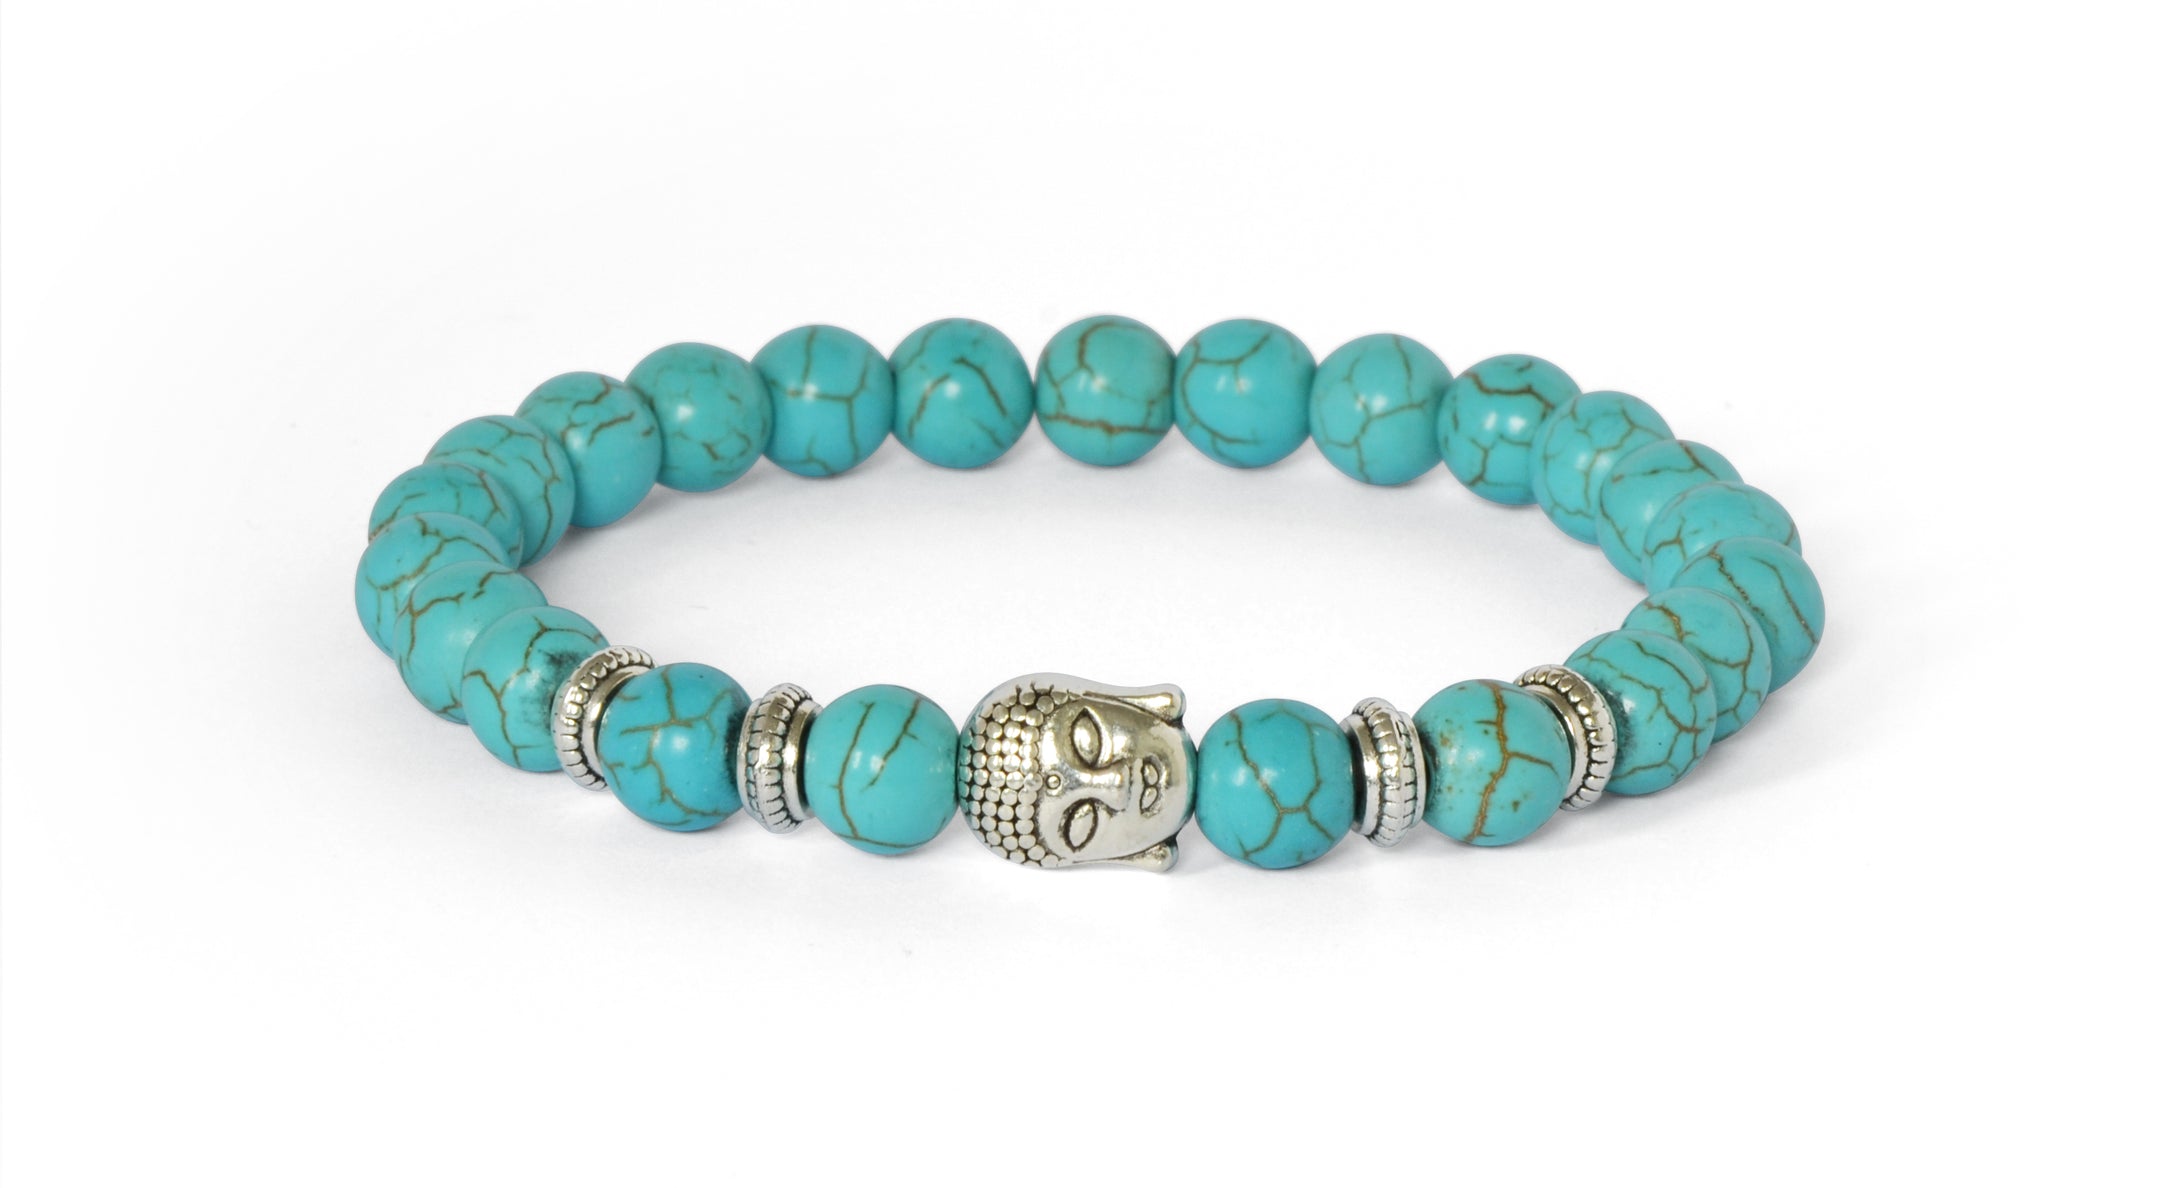 Bouddha Bracelet Porte-Bonheur - Proposé en 8 pierres de couleurs différentes -